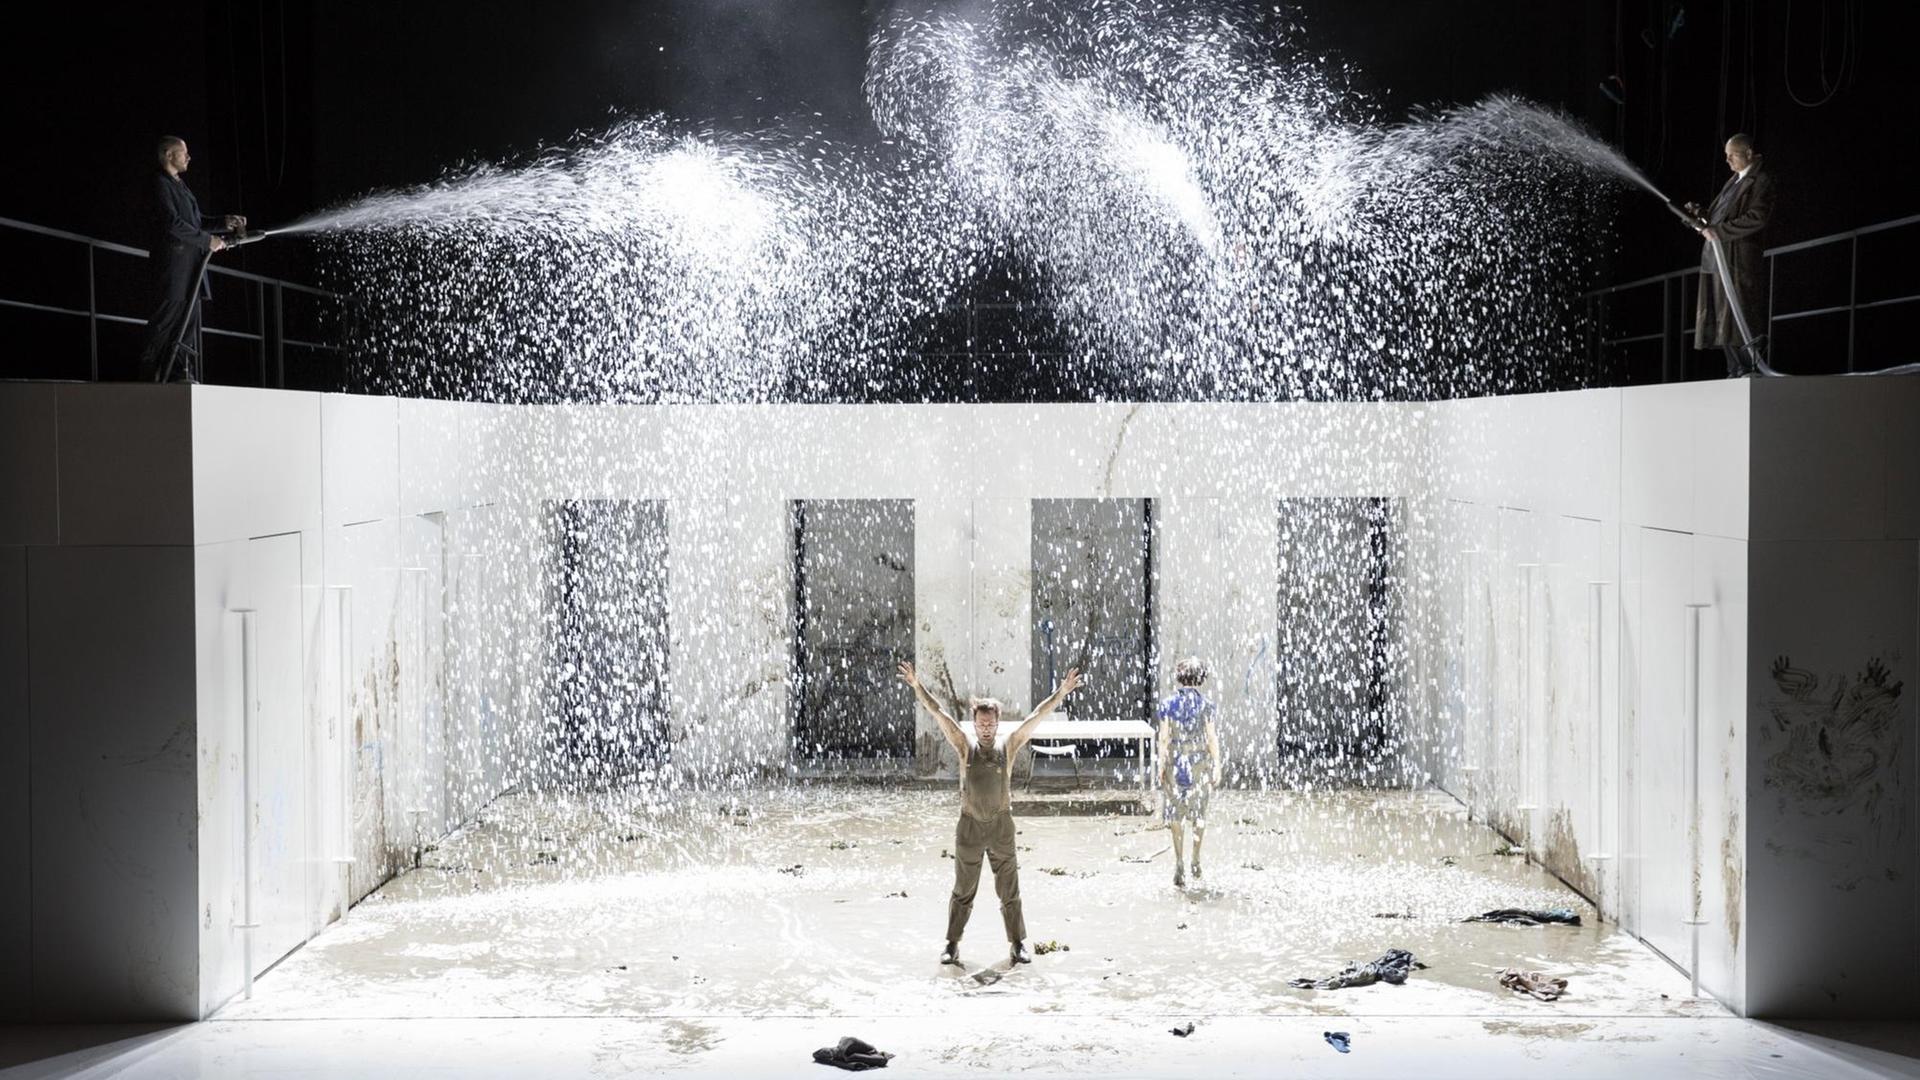 Szene aus "Les Bienveillantes": Zwei Schauspieler sprenkeln mit Schläuchen Wasser auf die völlig verdreckte Bühne und die darauf stehenden Schauspieler.